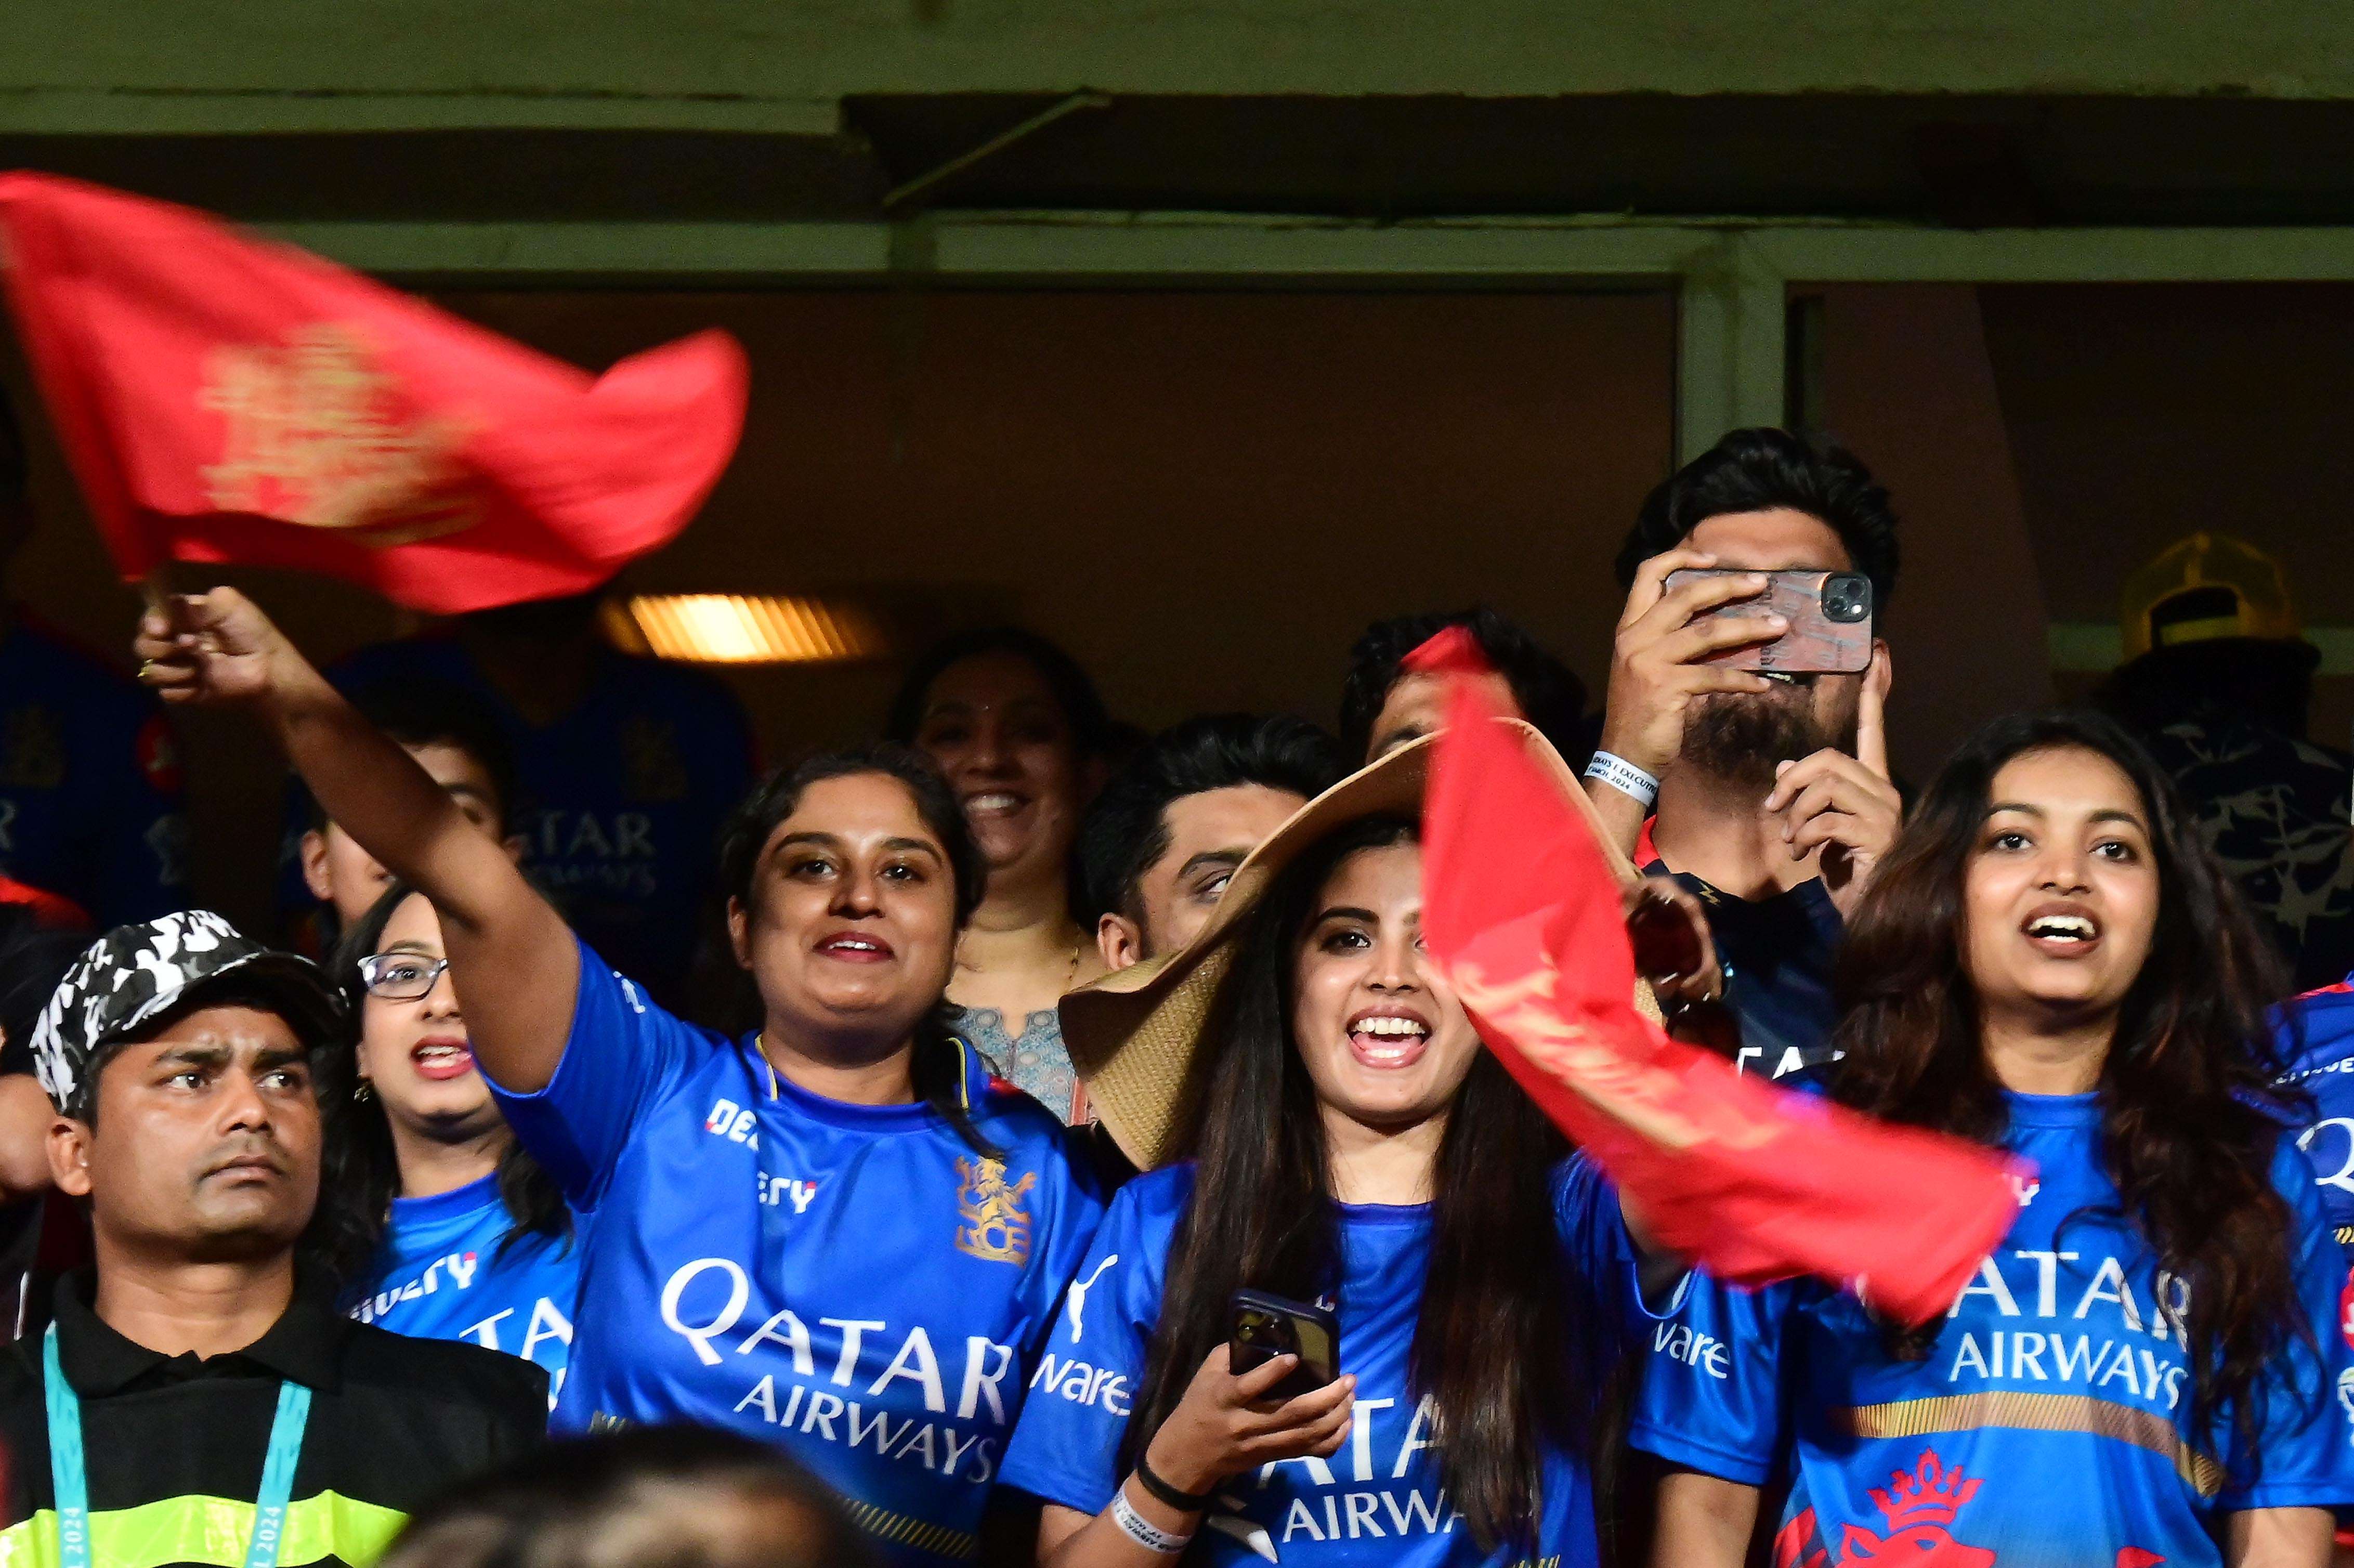 Photo: आईपीएल को लेकर क्रिकेट प्रेमियों ने दिखाया उत्साह